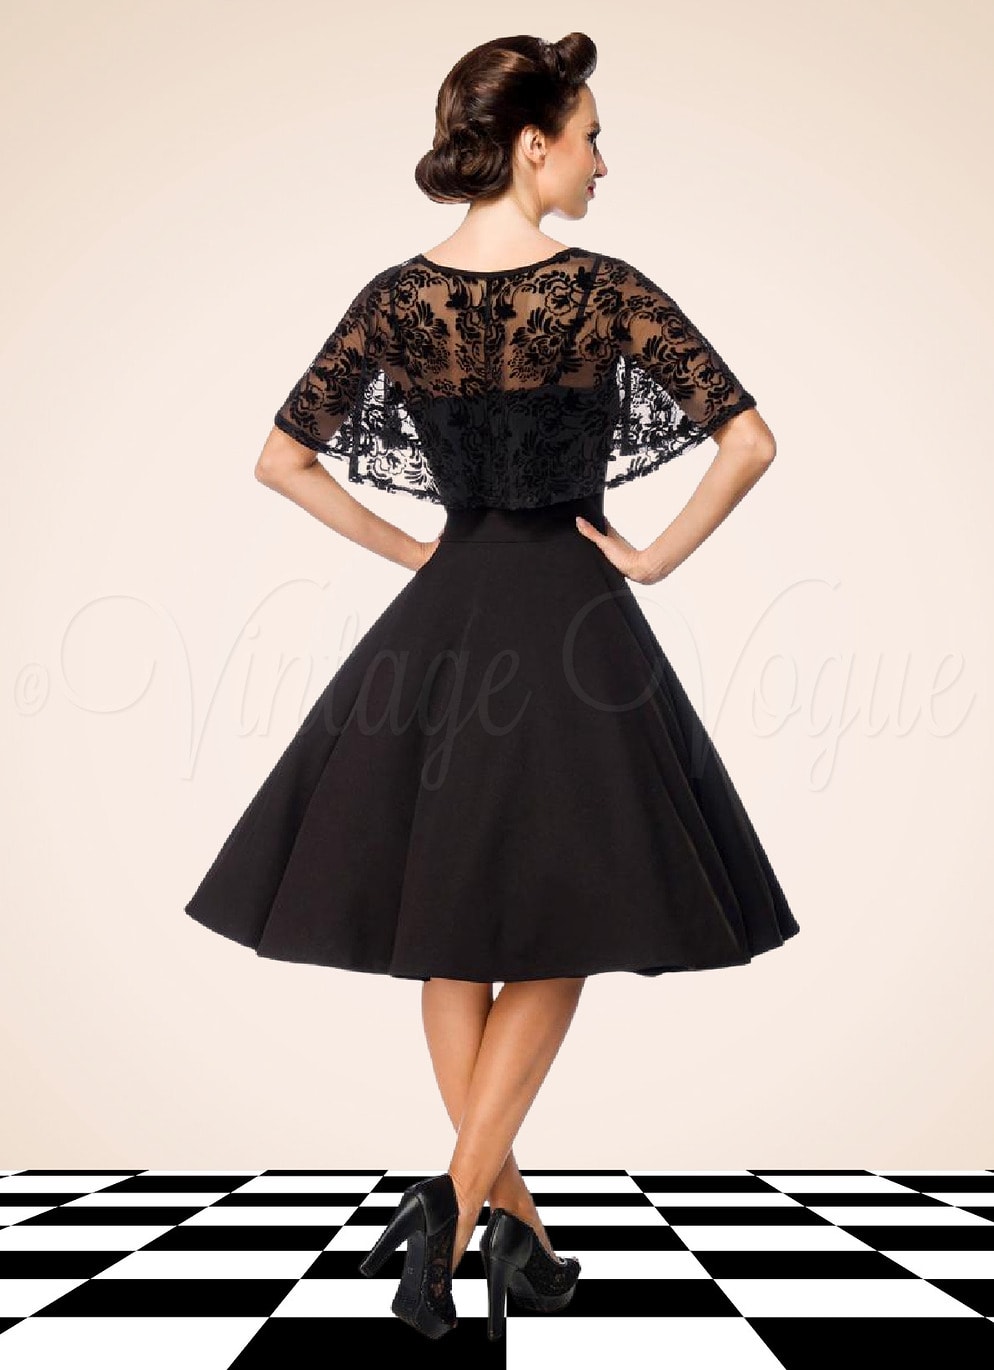 Belsira 50er Jahre Vintage Retro Swing Kleid mit Mesh Spitzen Cape in Schwarz Petticoat Damen Damenkleid Spitzenkleid elegant Abendkleid festlich